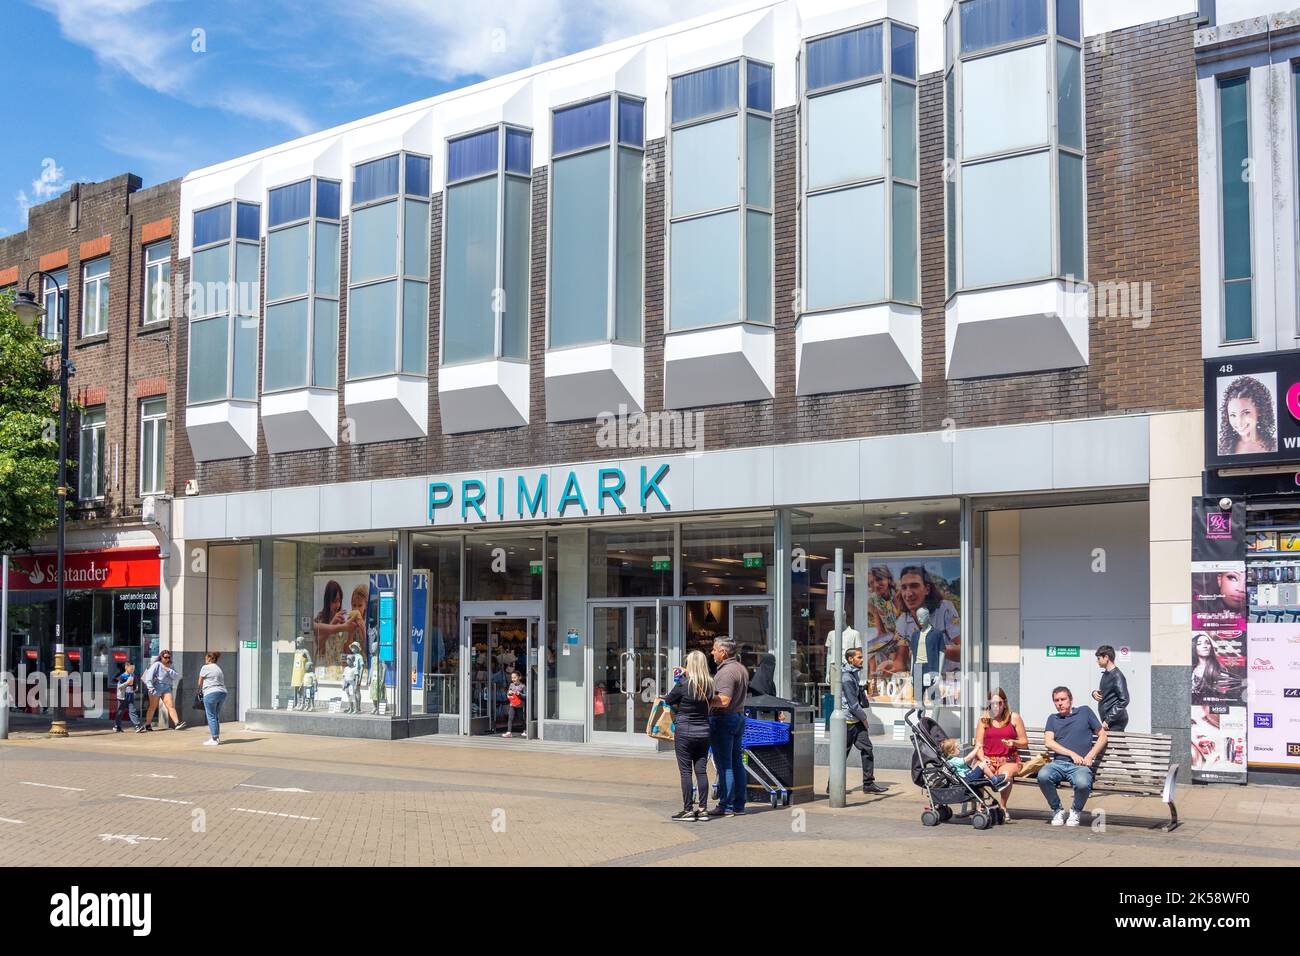 Entrada a la tienda de ropa Primark, George Street, Luton, Bedfordshire, Inglaterra, Reino Unido Foto de stock